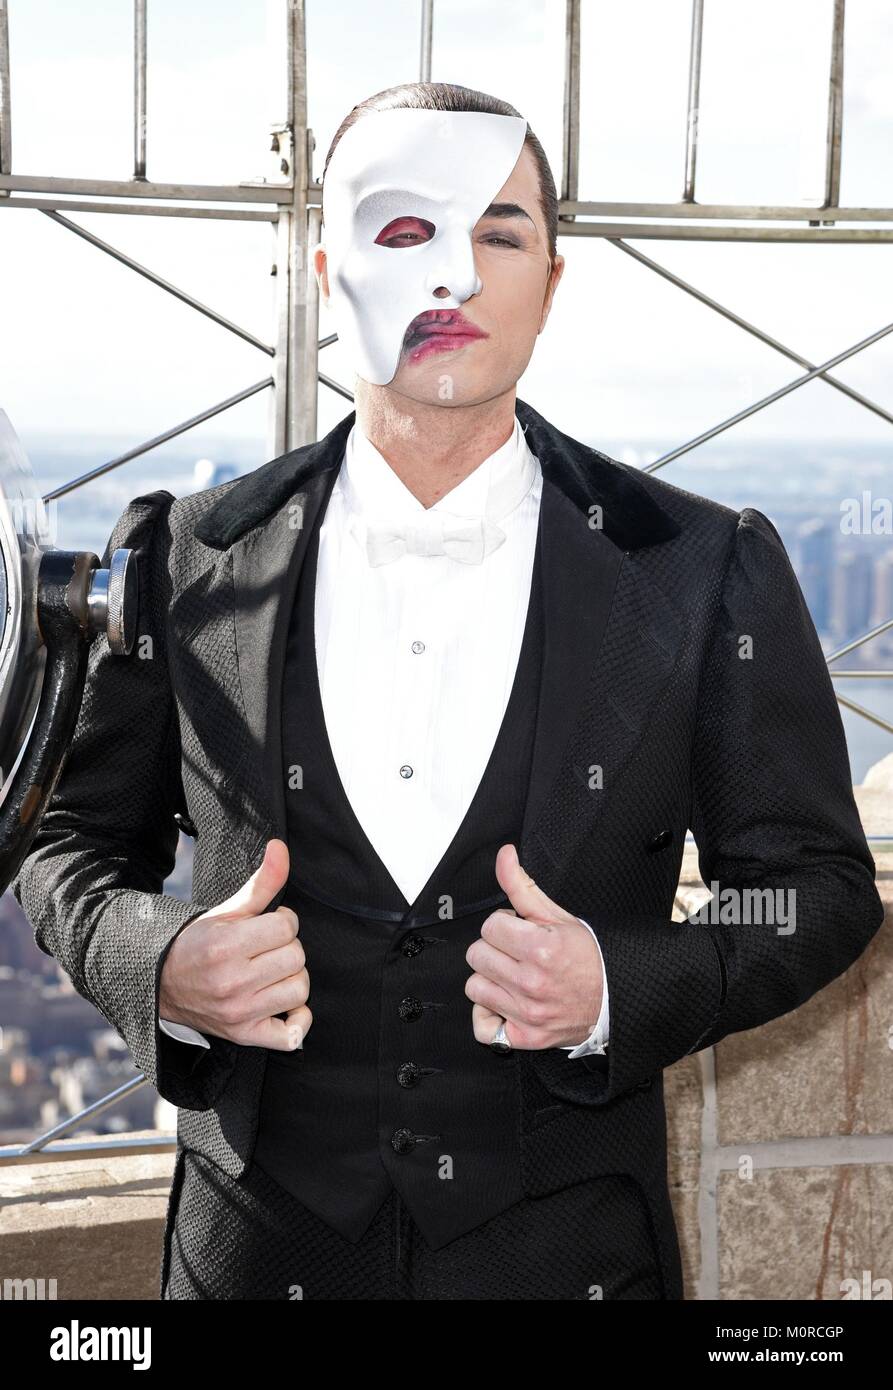 New York, NY, USA. 24th Jan, 2018. Peter Joback at a public appearance for  The Phantom of the Opera Stars Visit Empire State Building, Empire State  Building, New York, NY January 24,